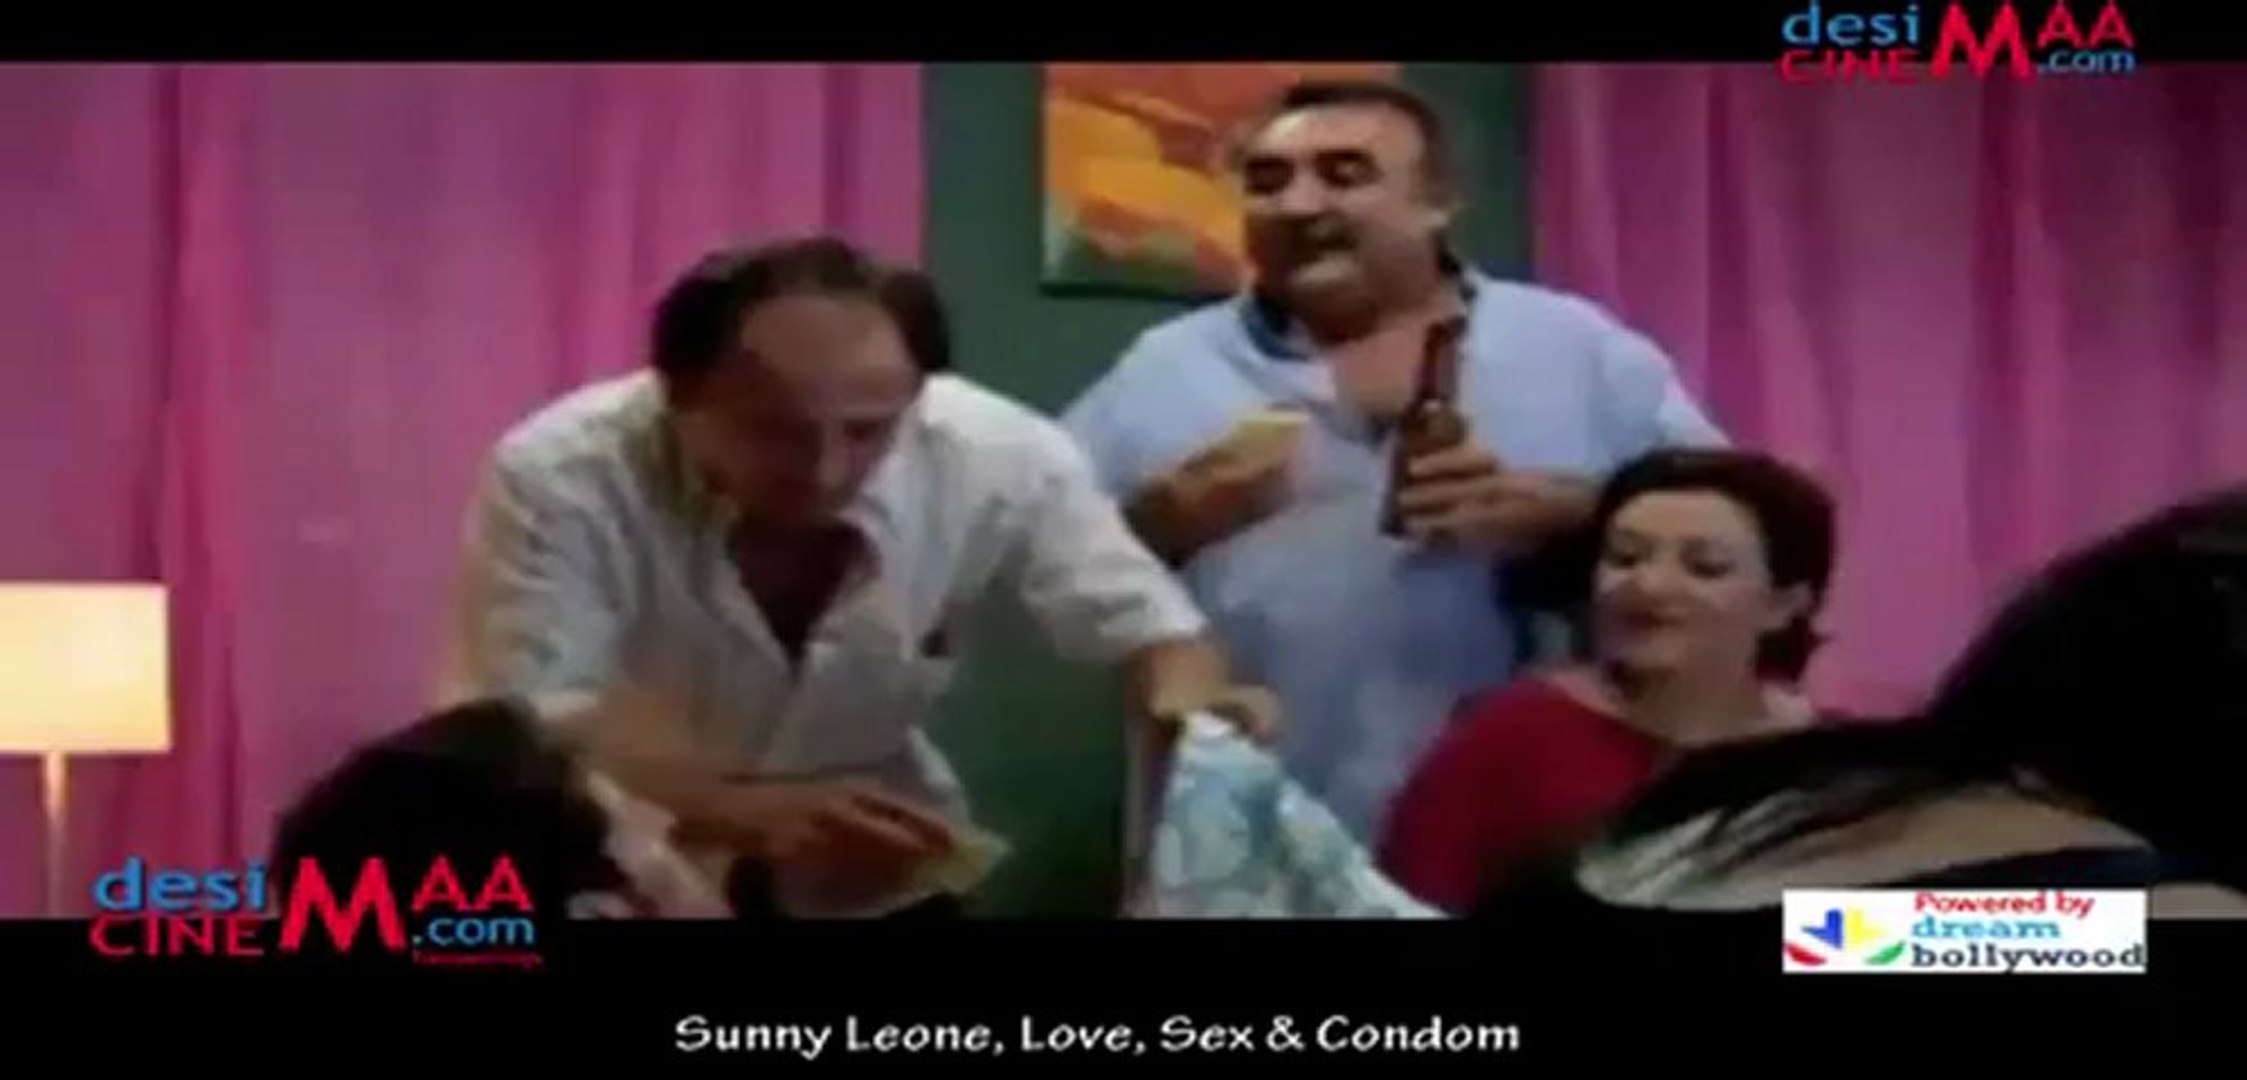 Sunny Leone Condom Sex Videos - Sunny Leone, Love, Sex & Condom - video Dailymotion